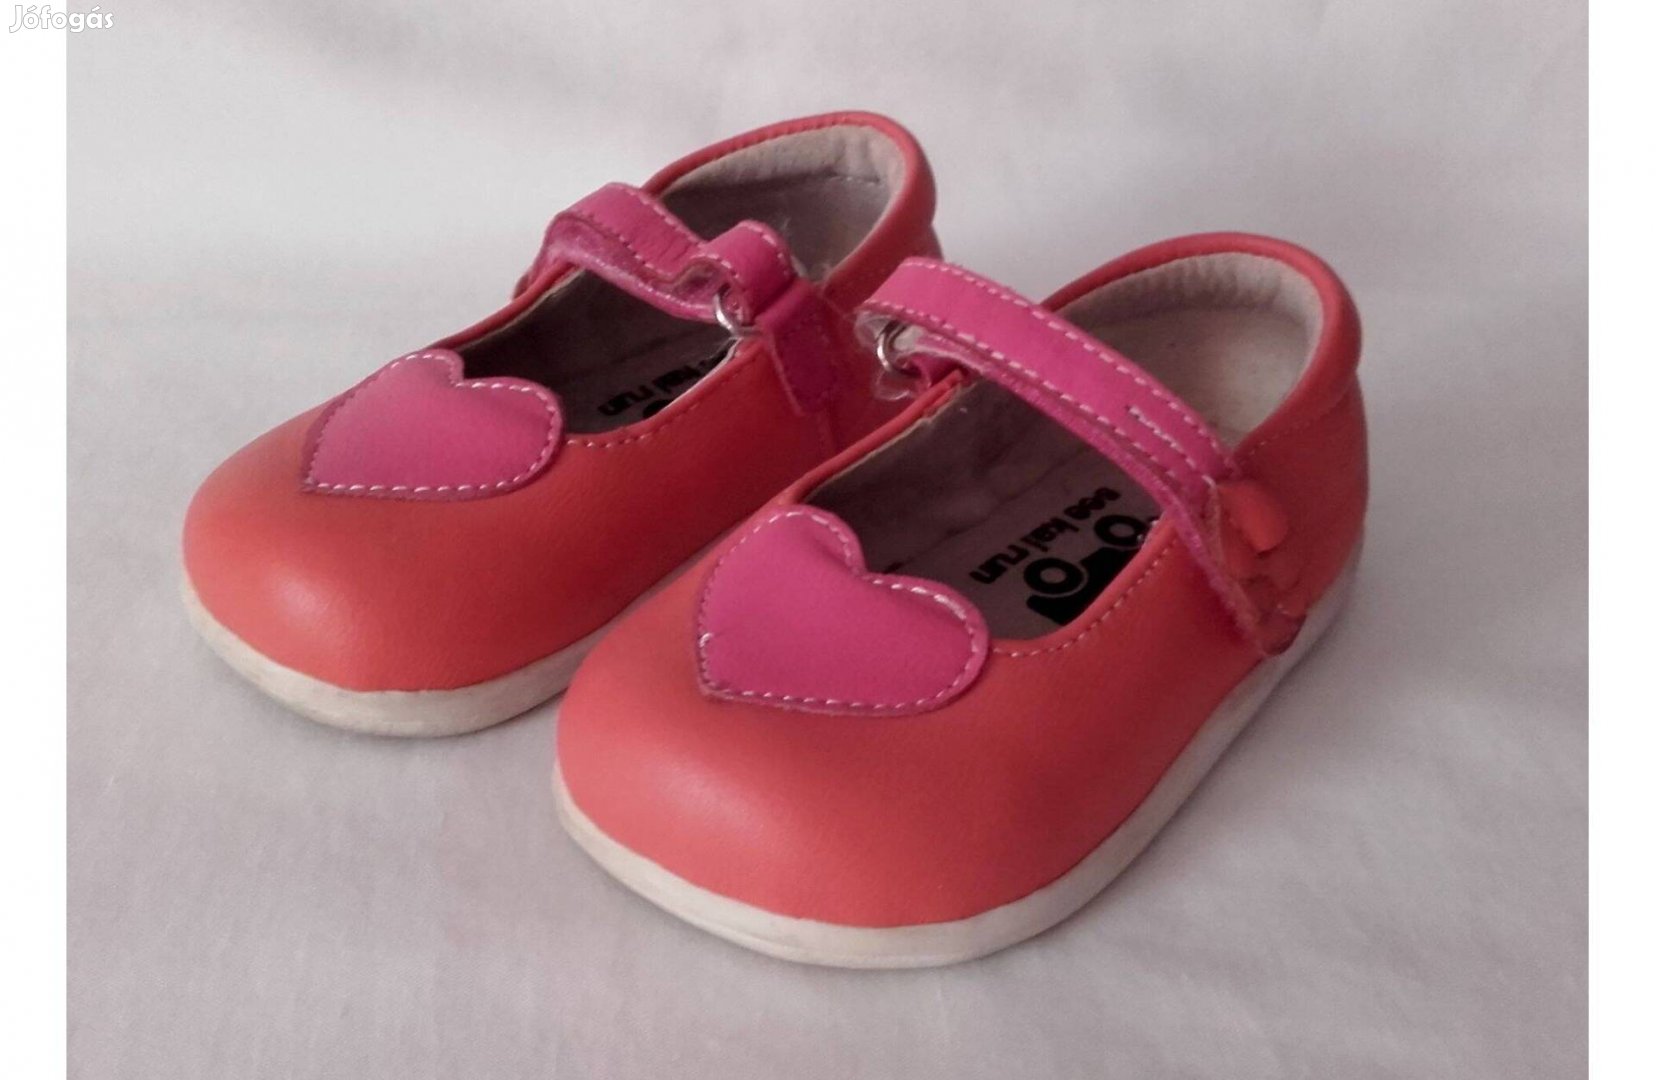 Szívecskés kislány cipő, bth: 12 cm